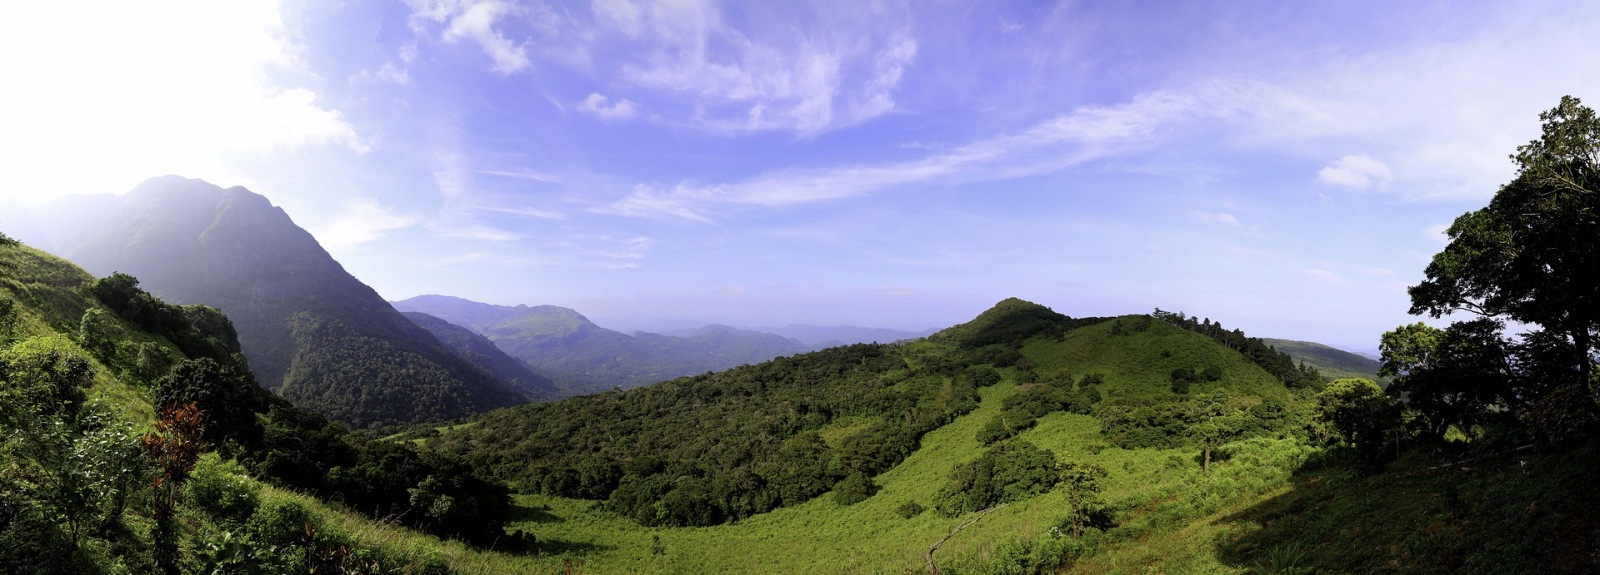 Re natural. Шри Ланка горы. Отель в горах Шри Ланки Нувара Элия. Гора на Шри Ланке. Гора Пидуруталагала.